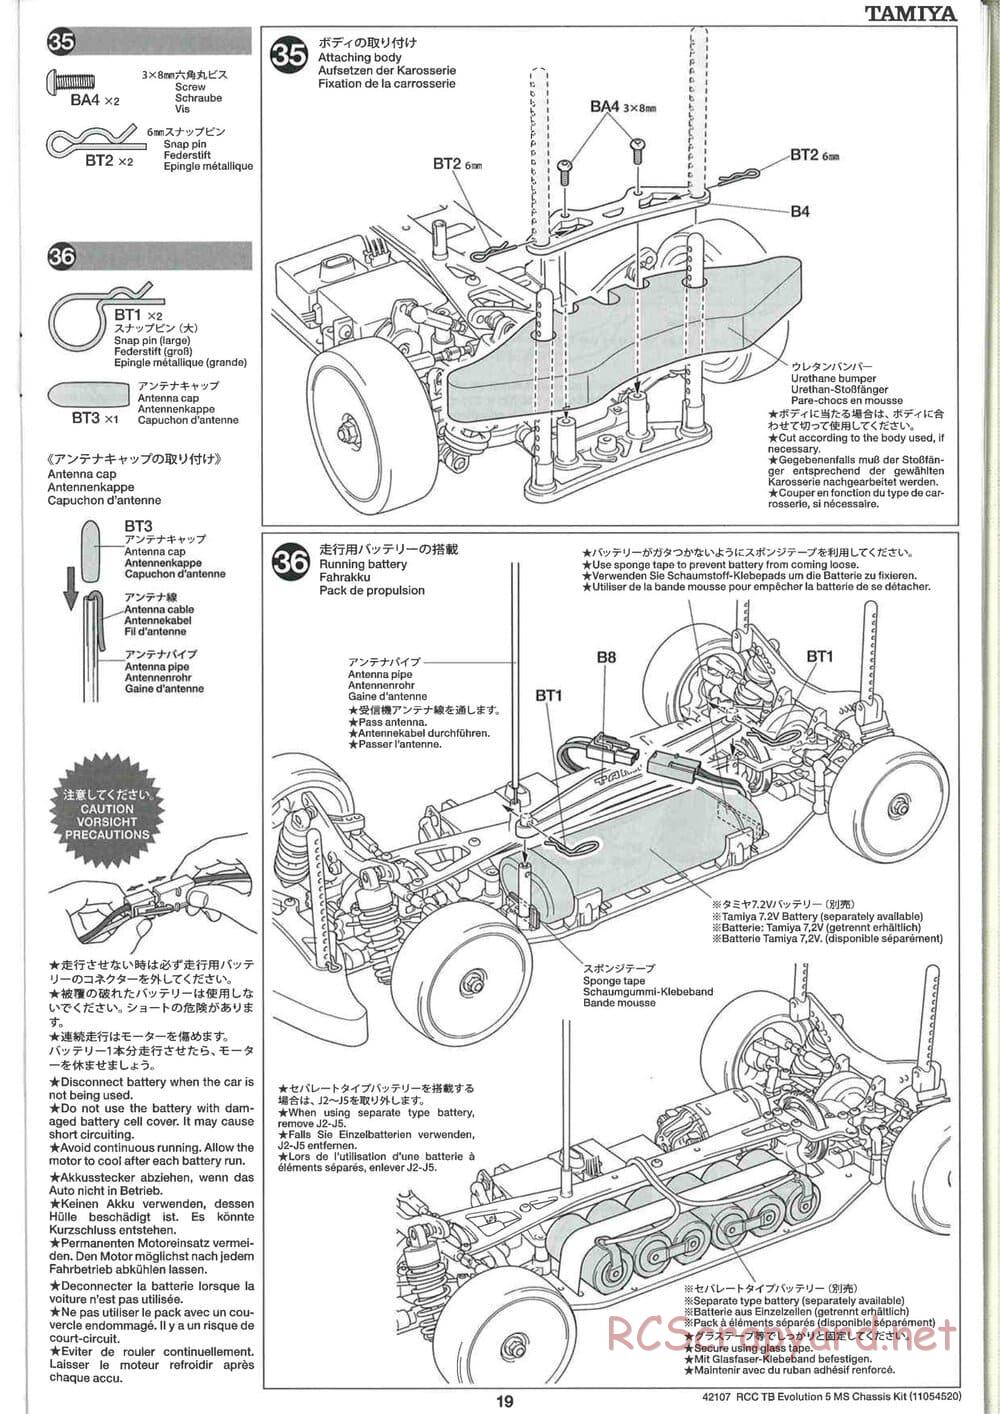 Tamiya - TB Evolution 5 MS Chassis - Manual - Page 19